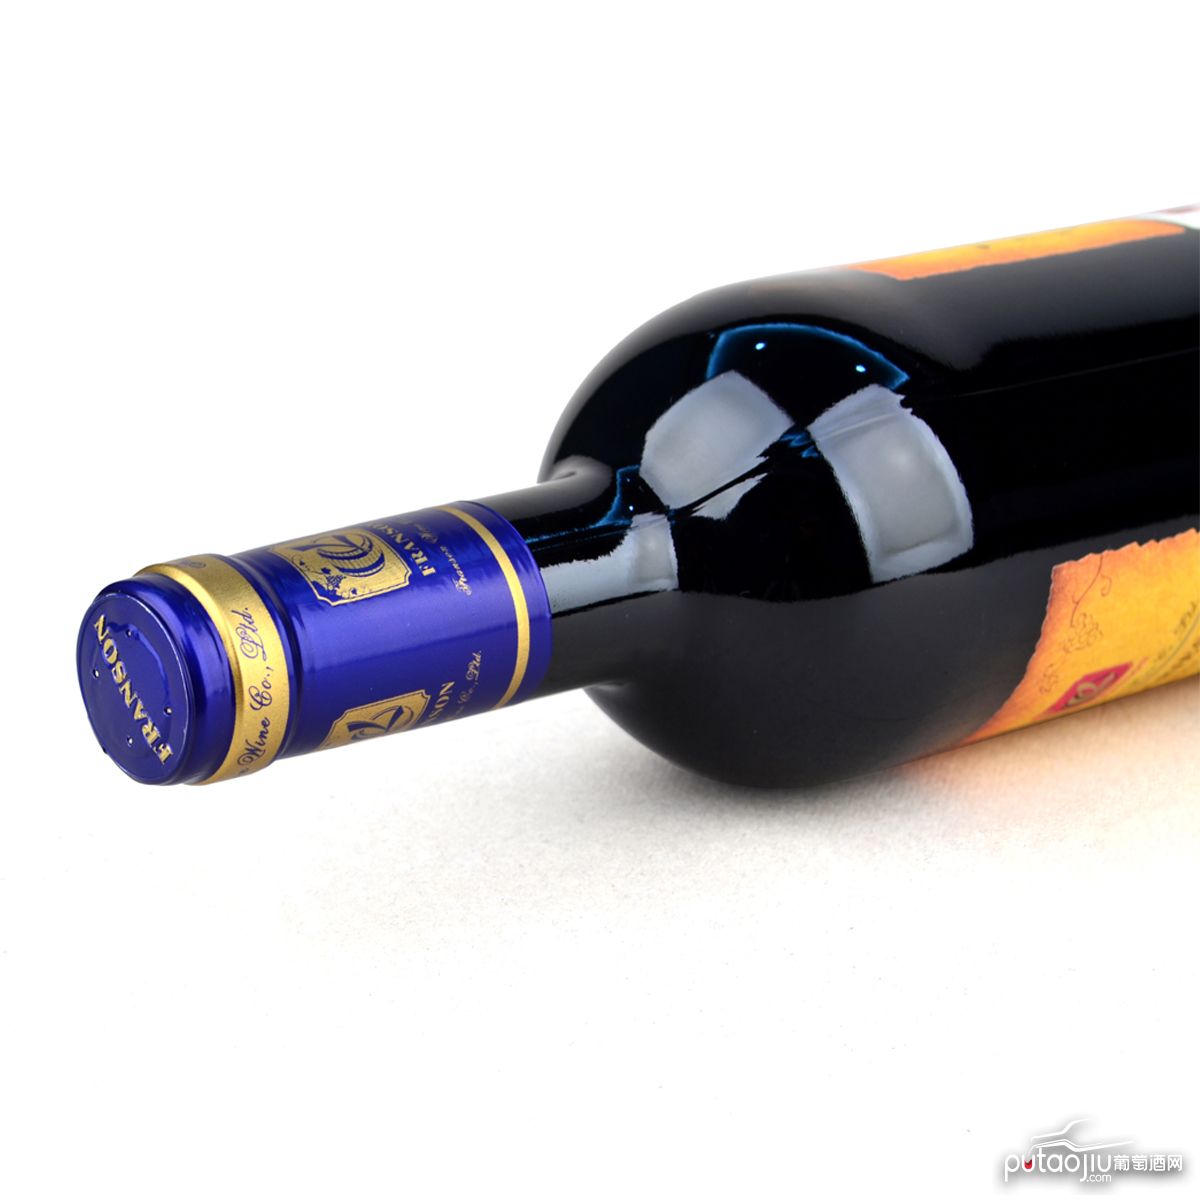 西班牙卡斯蒂亚SAN ANTONIO ABAD星座系列添帕尼优白羊座103VDLT干红葡萄酒